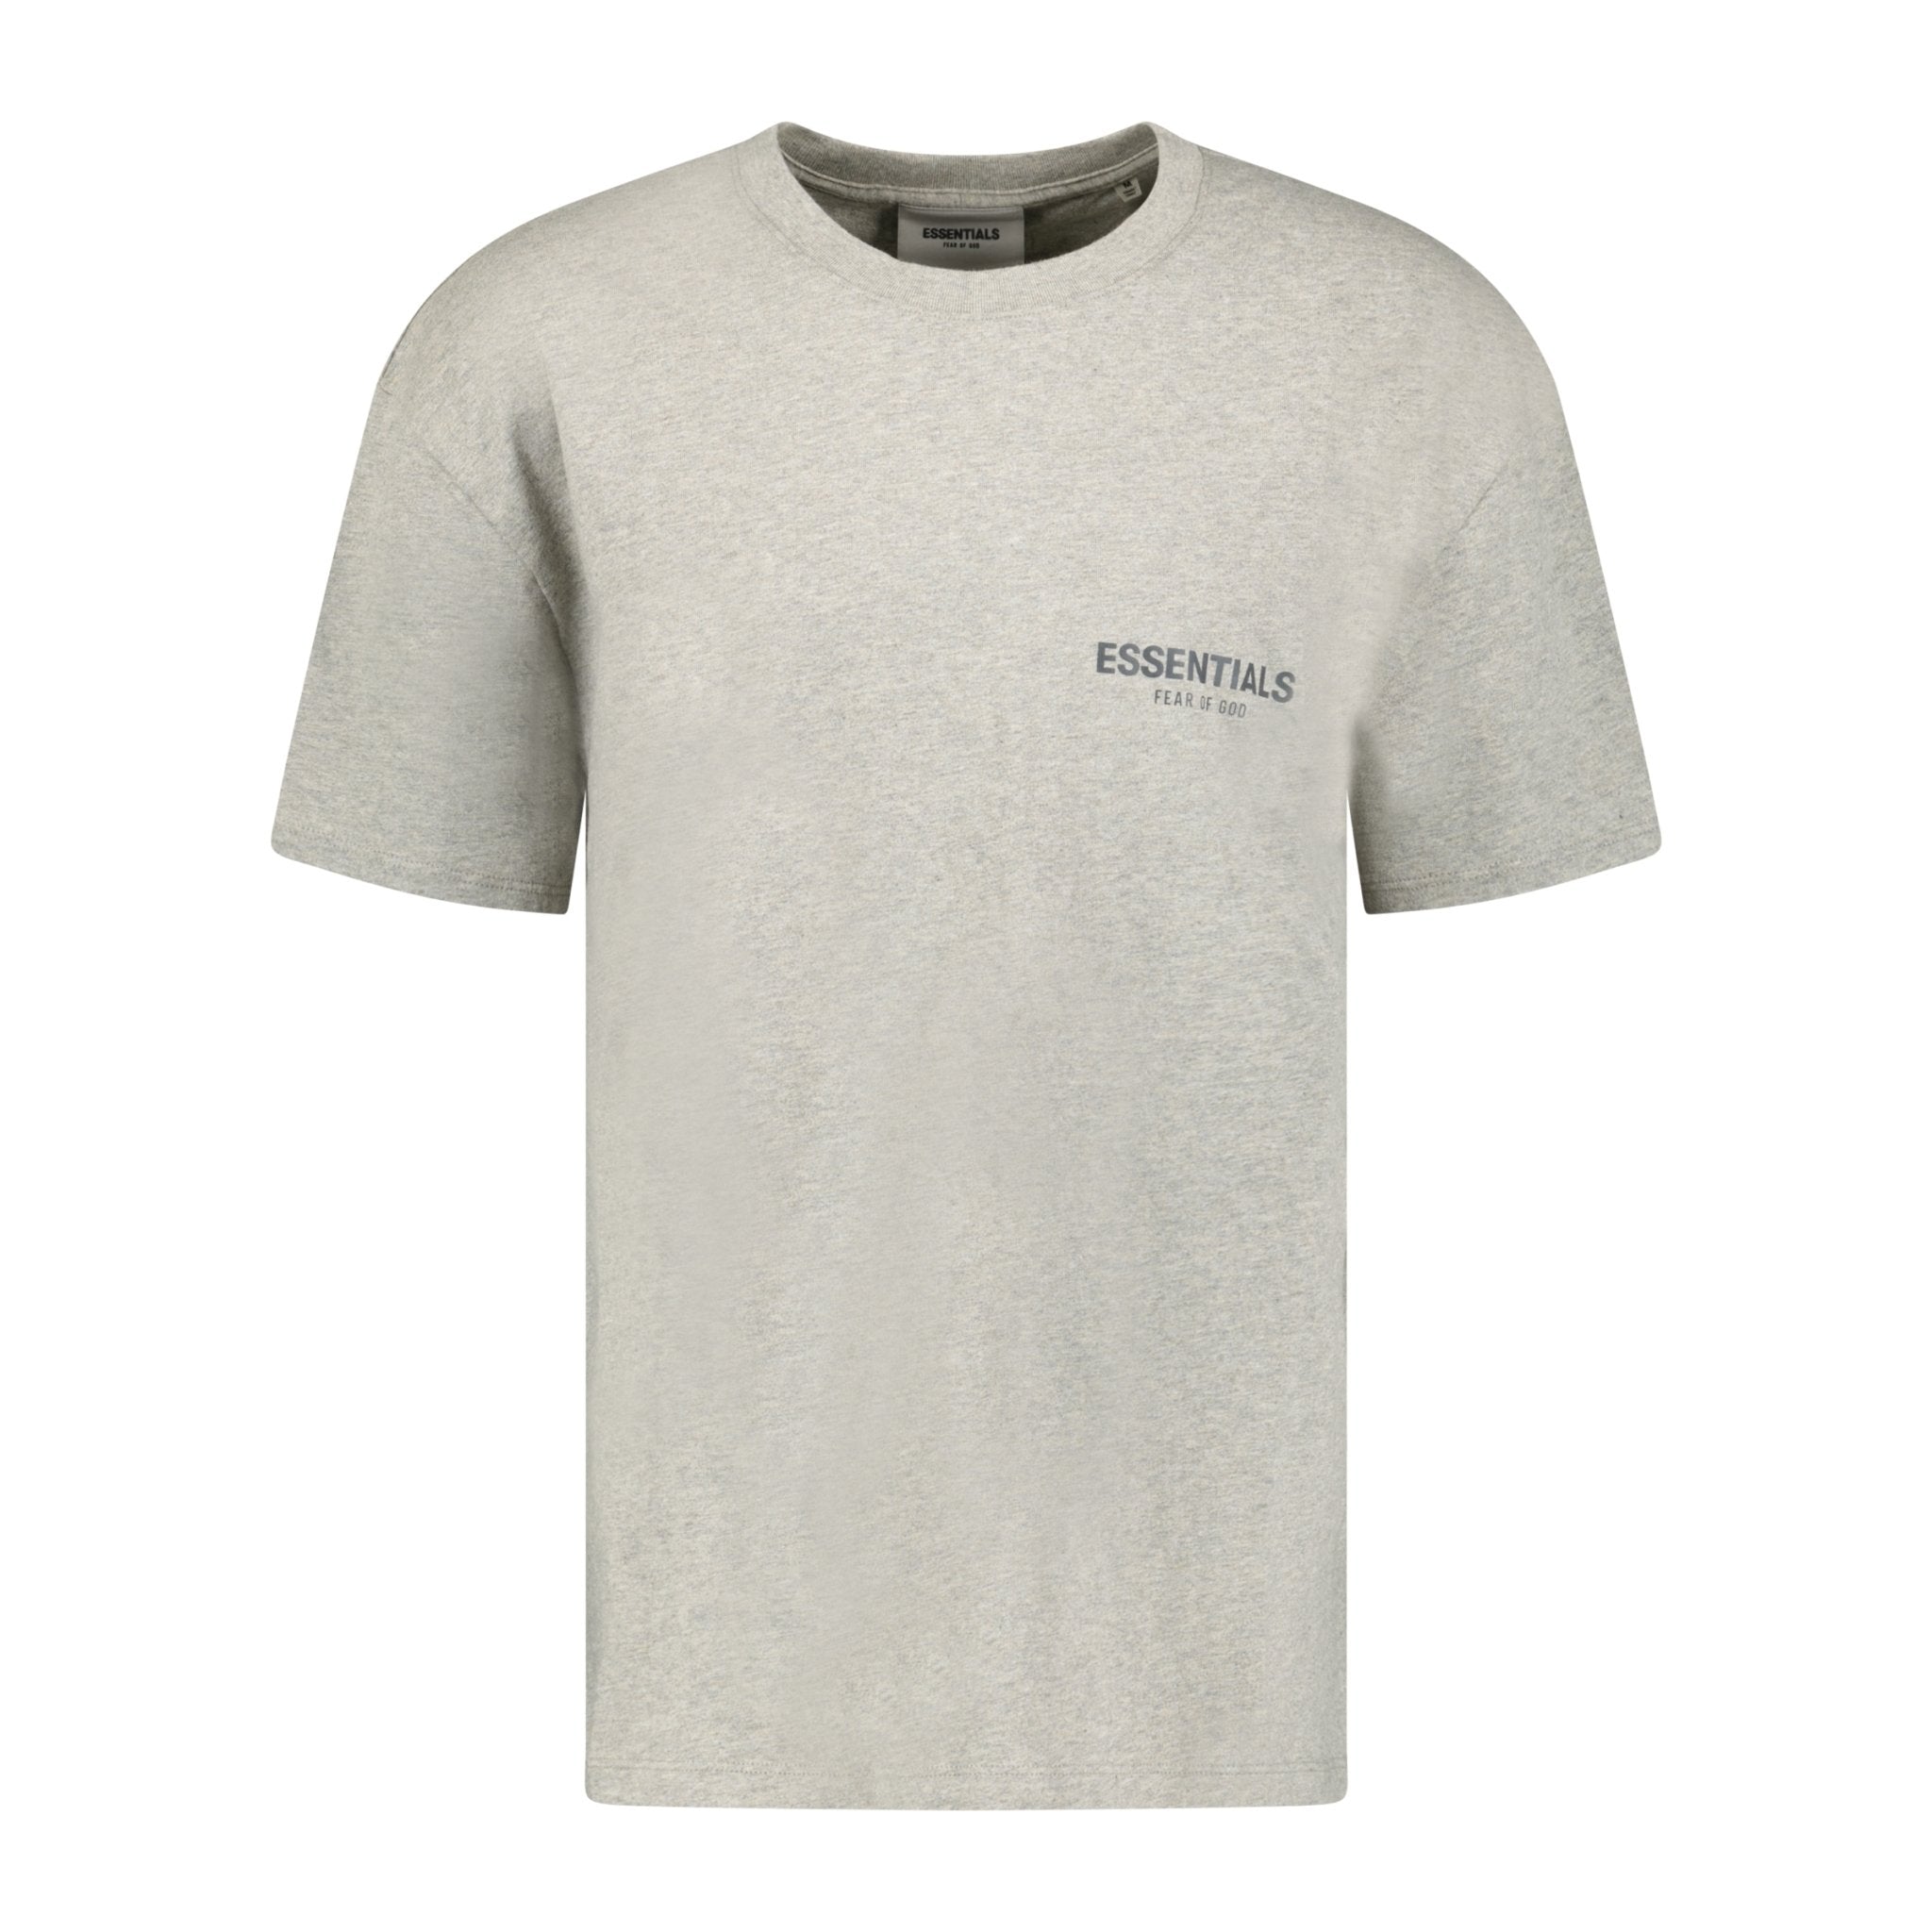 Essentials X Fear of God Reflective Logo T-shirt Grey (Dark Heather)